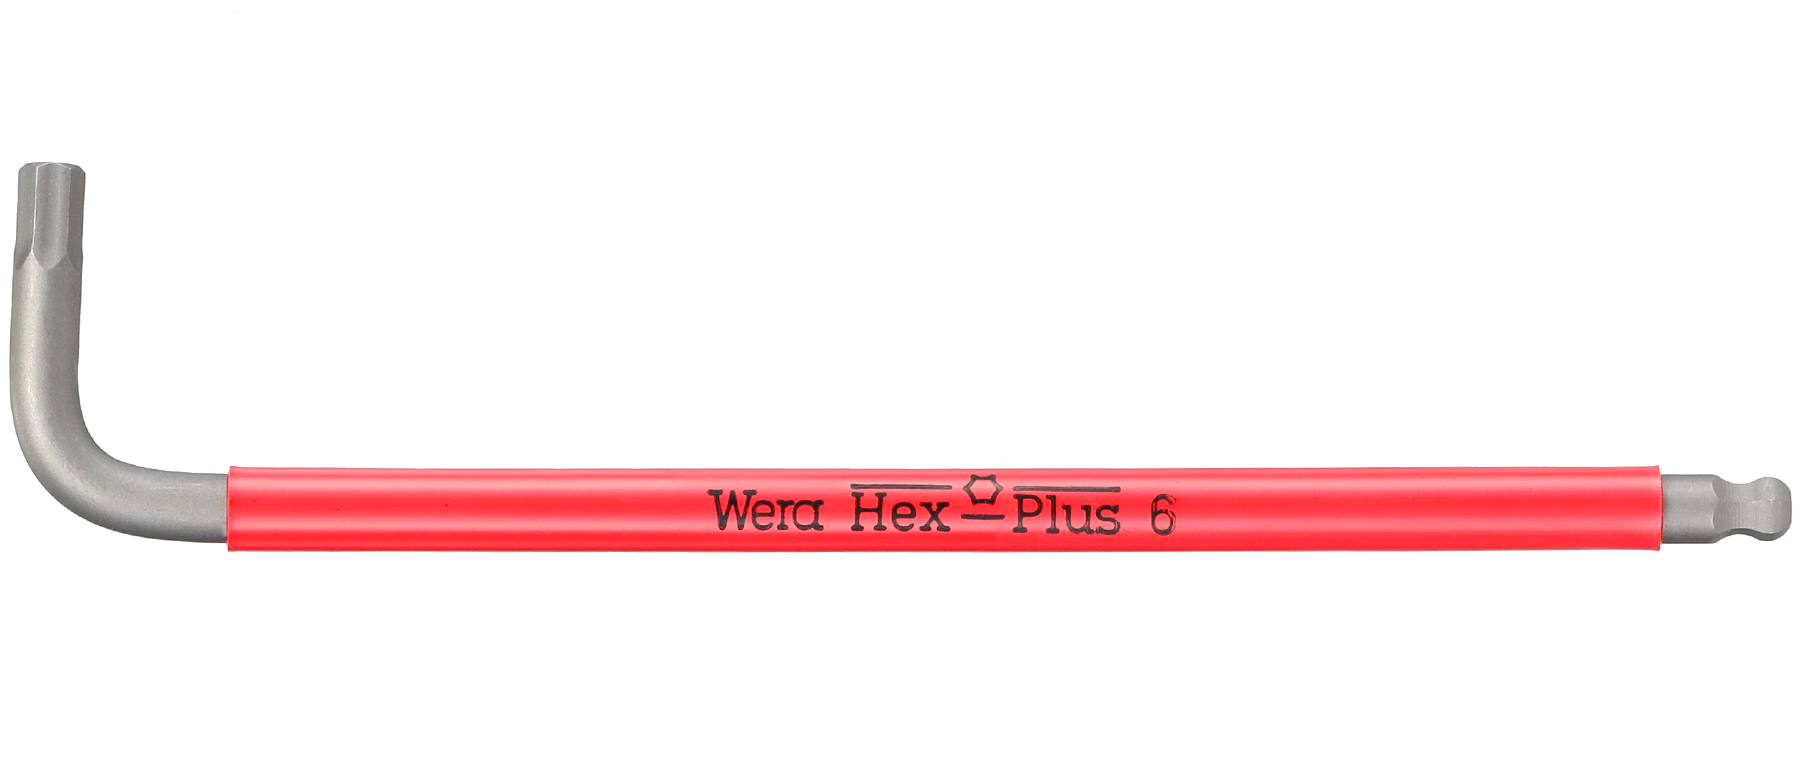 Wera 950/9 Hex-Plus SB L-Key Hex Wrench Set - Metric